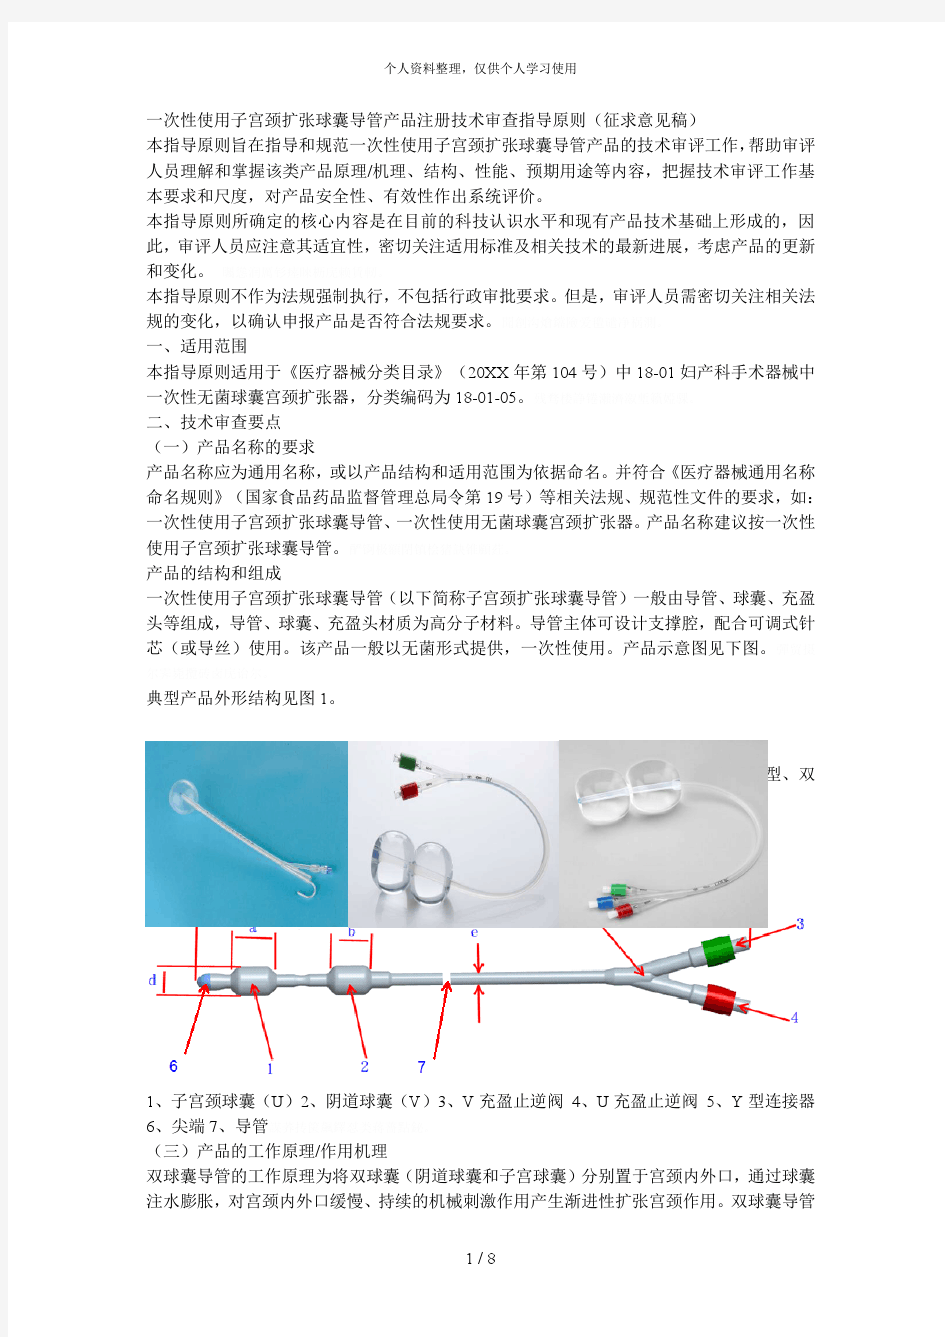 一次性使用子宫颈扩张球囊导管产品注册技术审查指导原则[001]